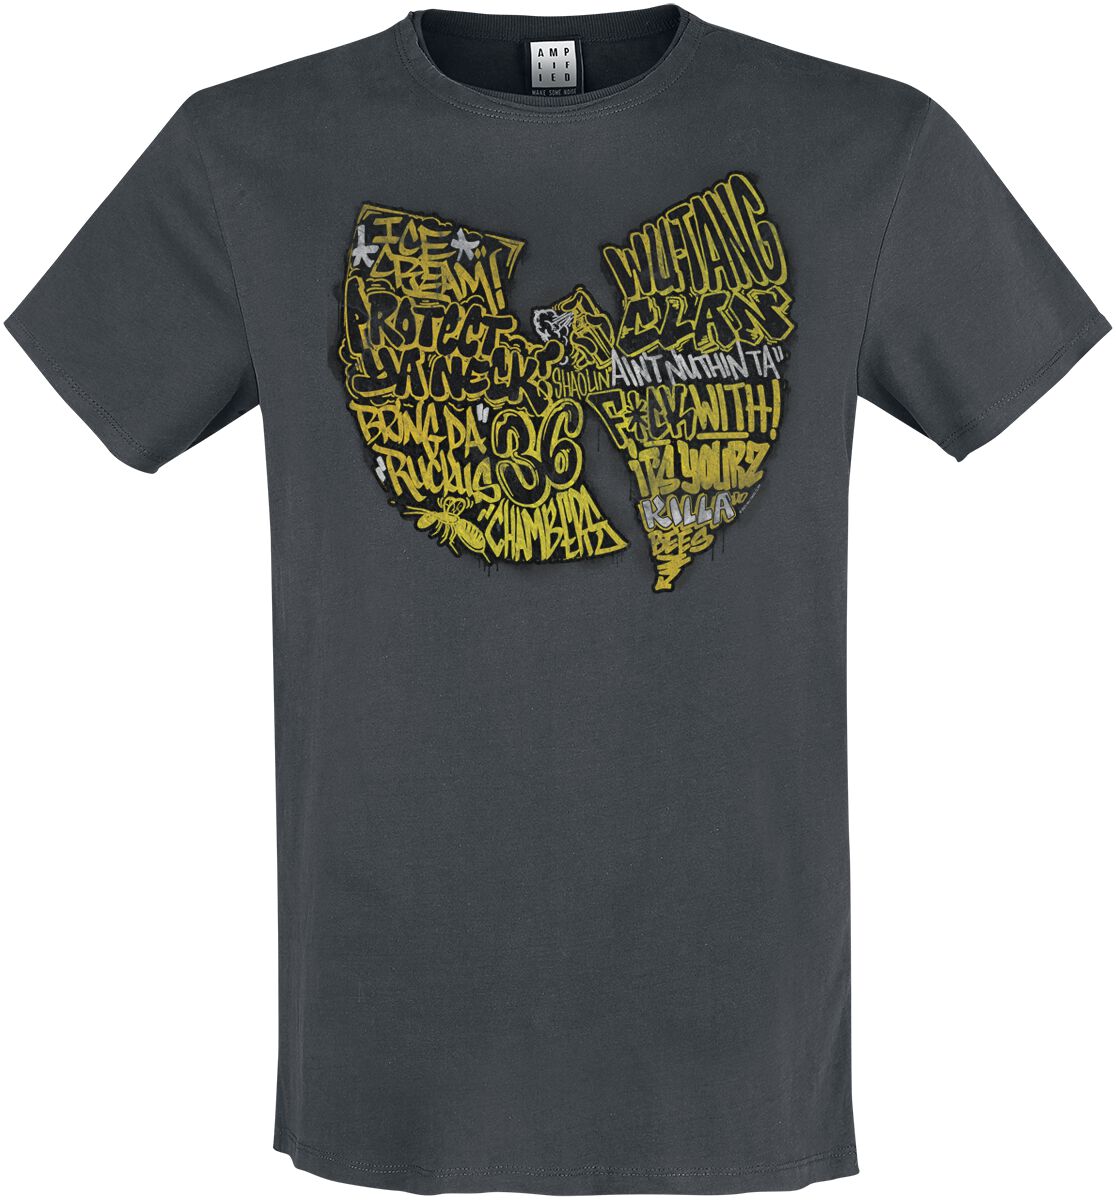 Wu-Tang Clan T-Shirt - Amplified Collection - Graffiti Logo - S bis 3XL - für Männer - Größe S - charcoal  - Lizenziertes Merchandise!